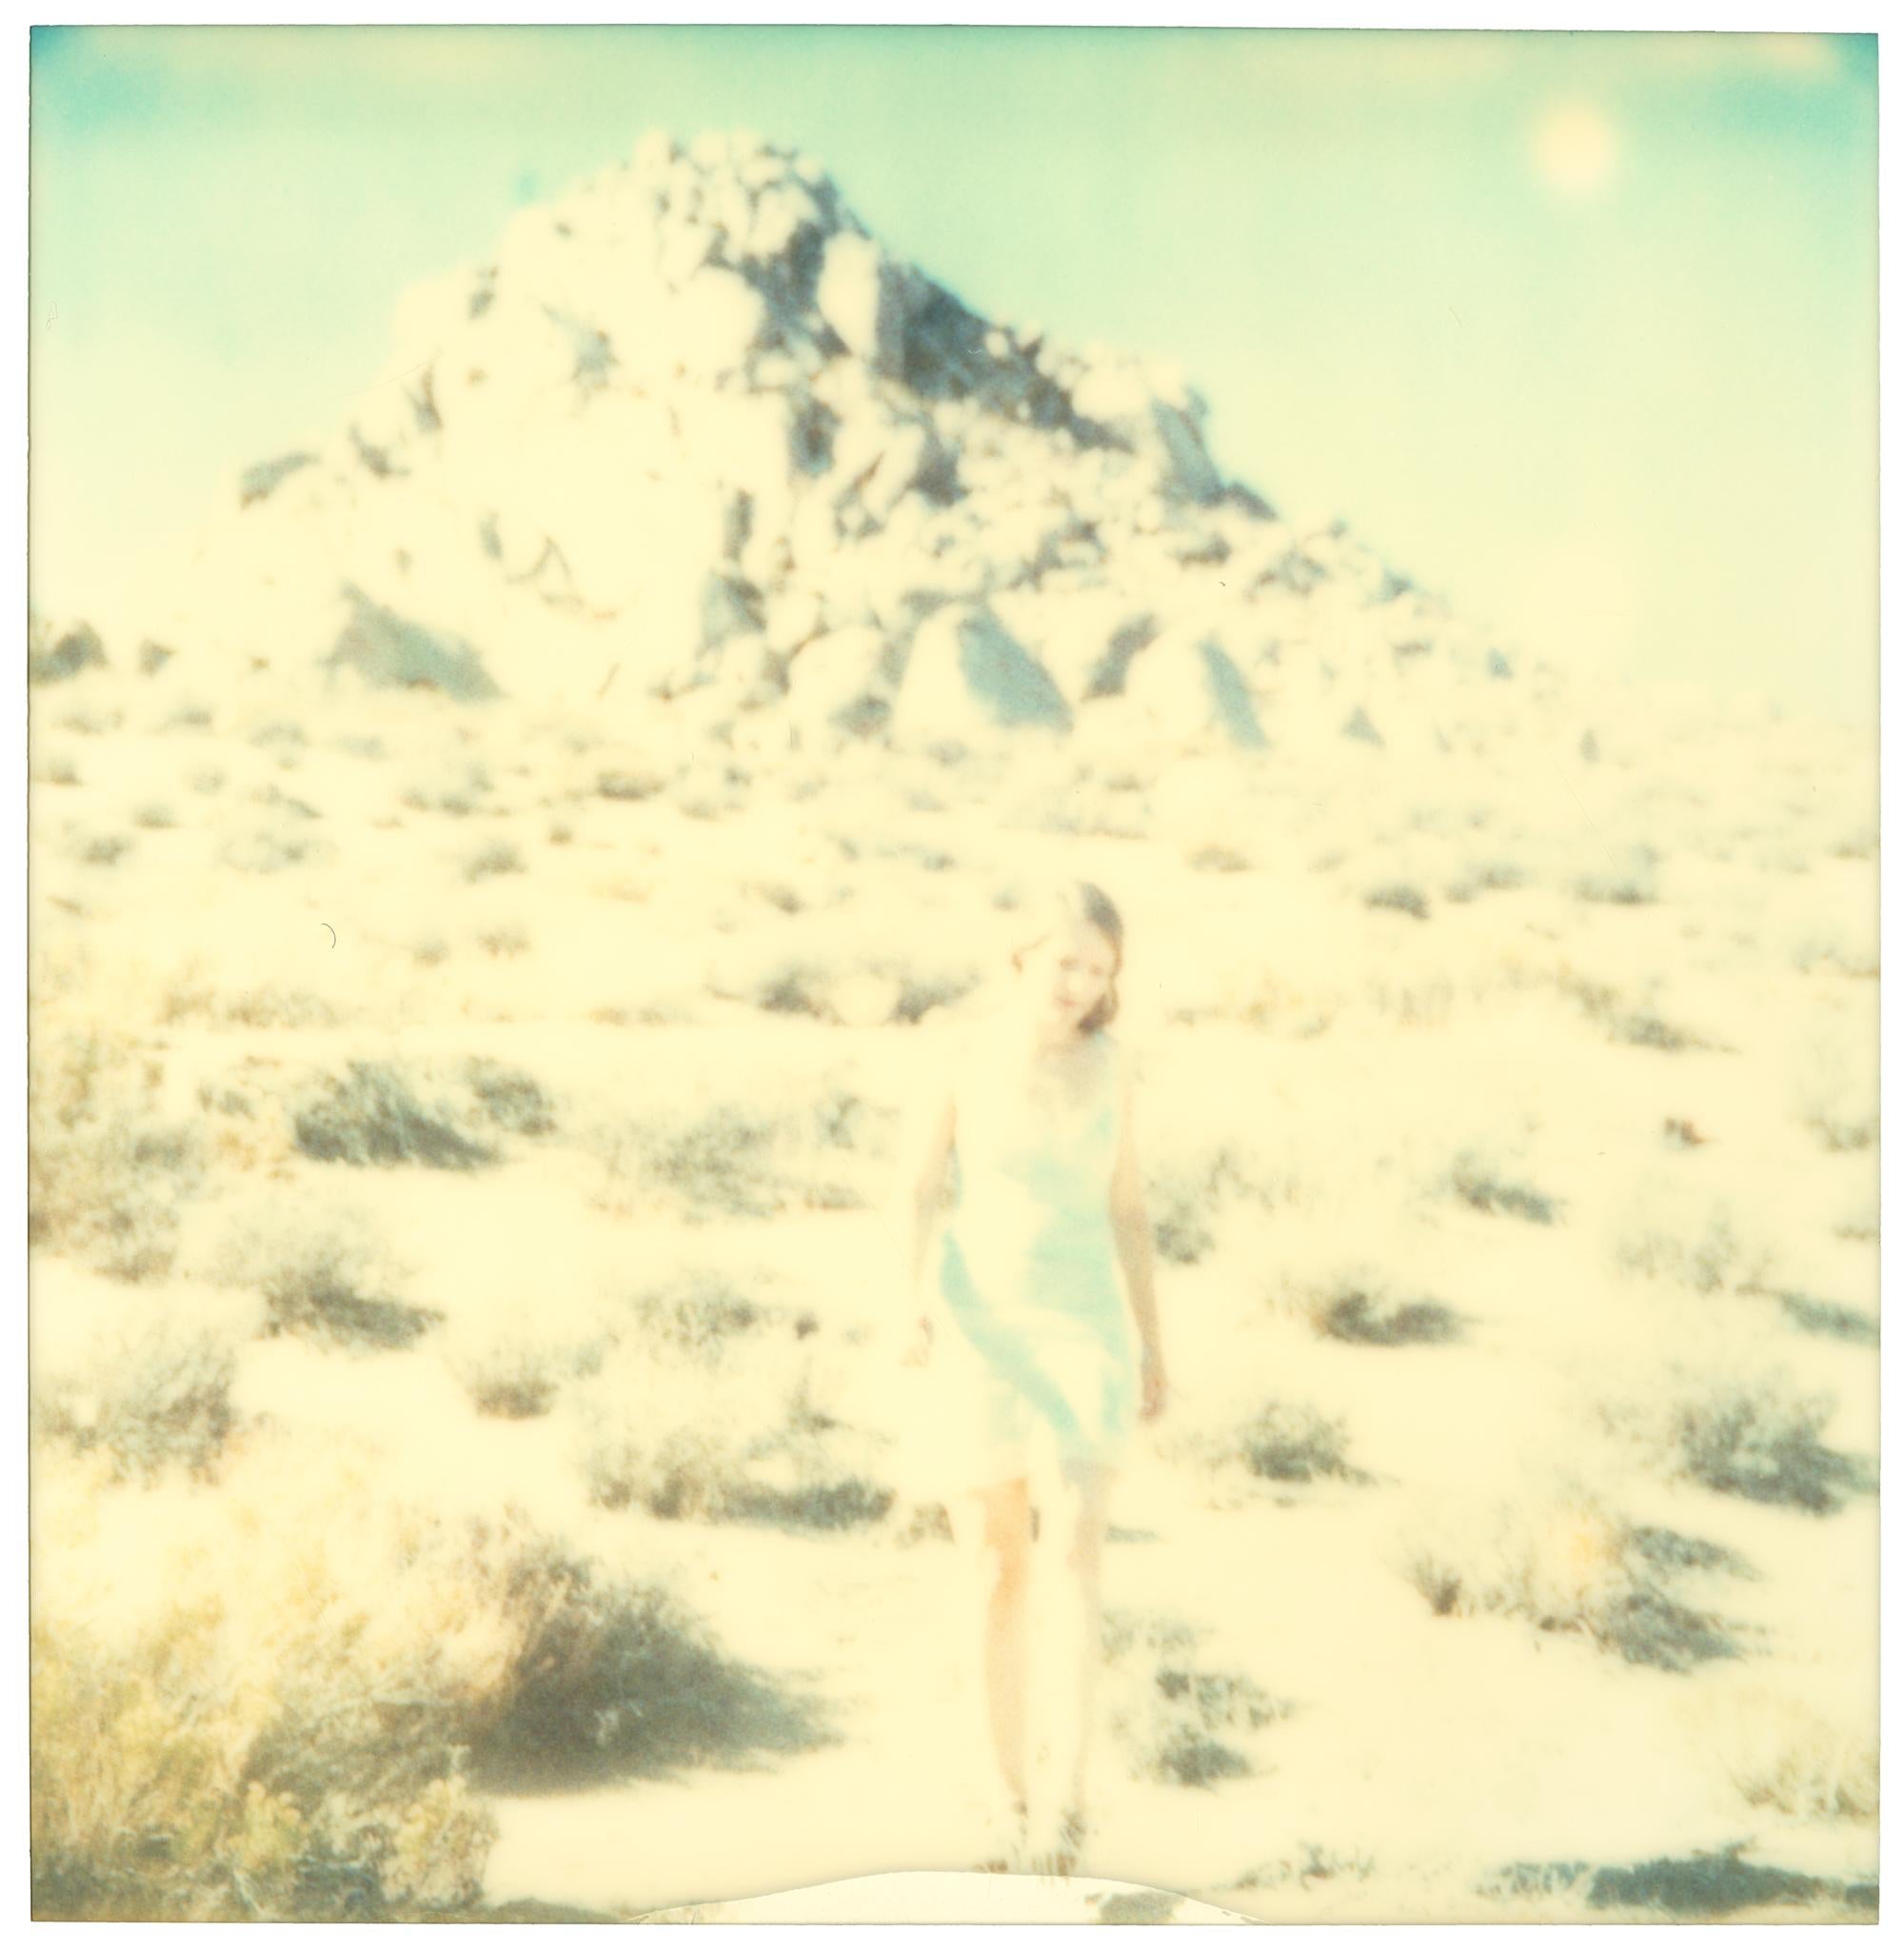 Aimless (Wastelands), triptyque, analogique - Polaroid, XXIe siècle, couleur - Photograph de Stefanie Schneider